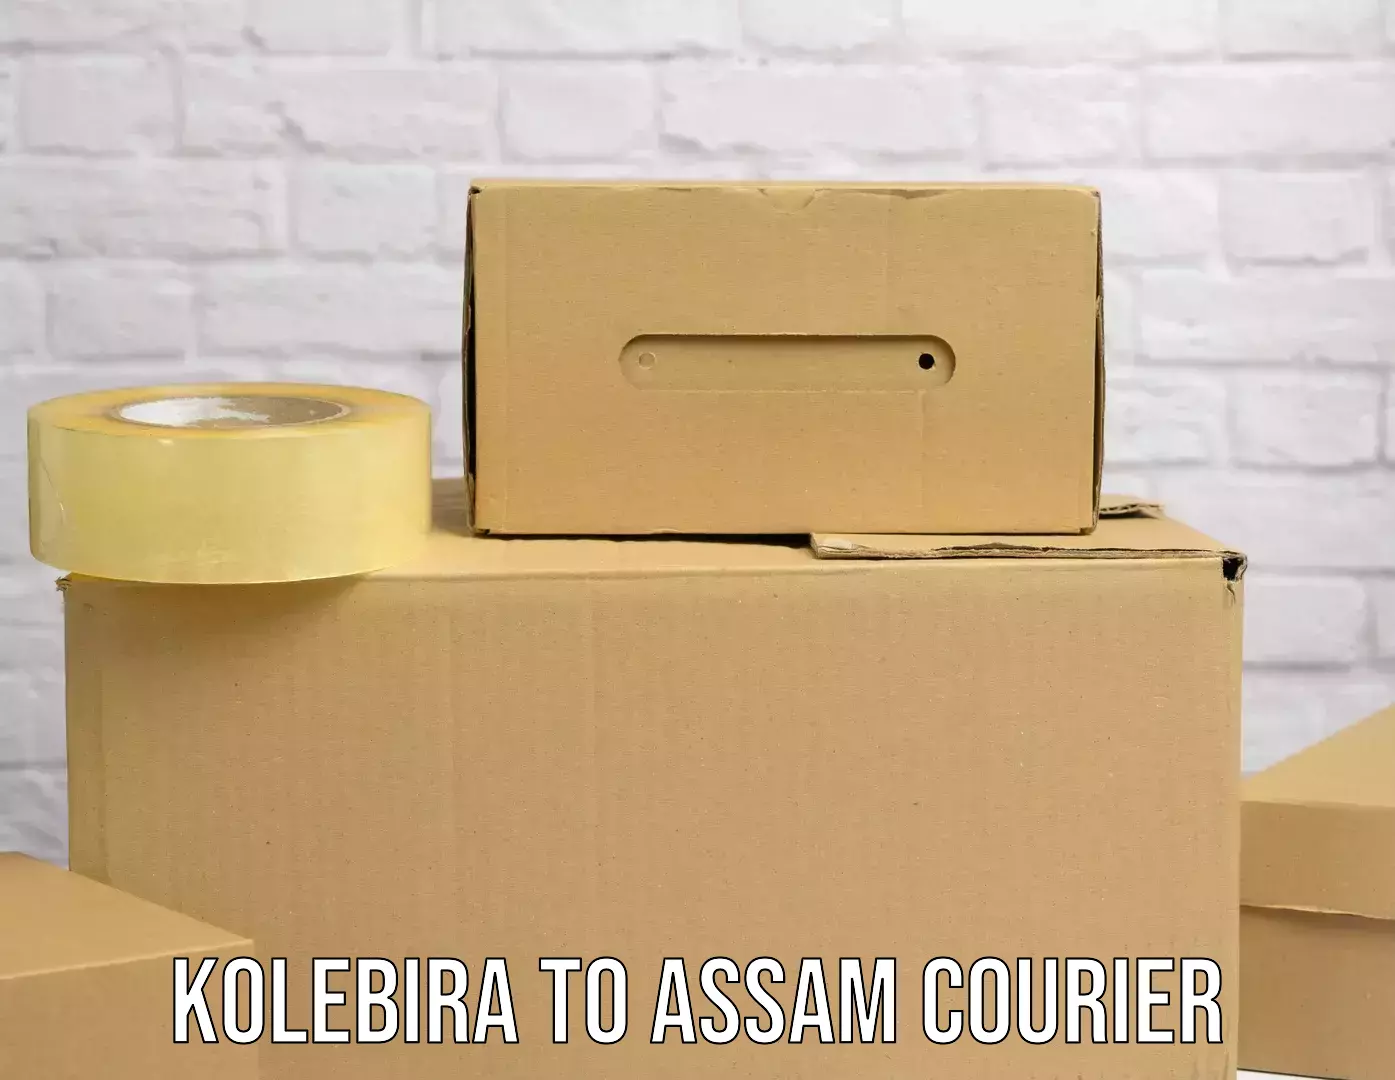 Express courier facilities Kolebira to Assam